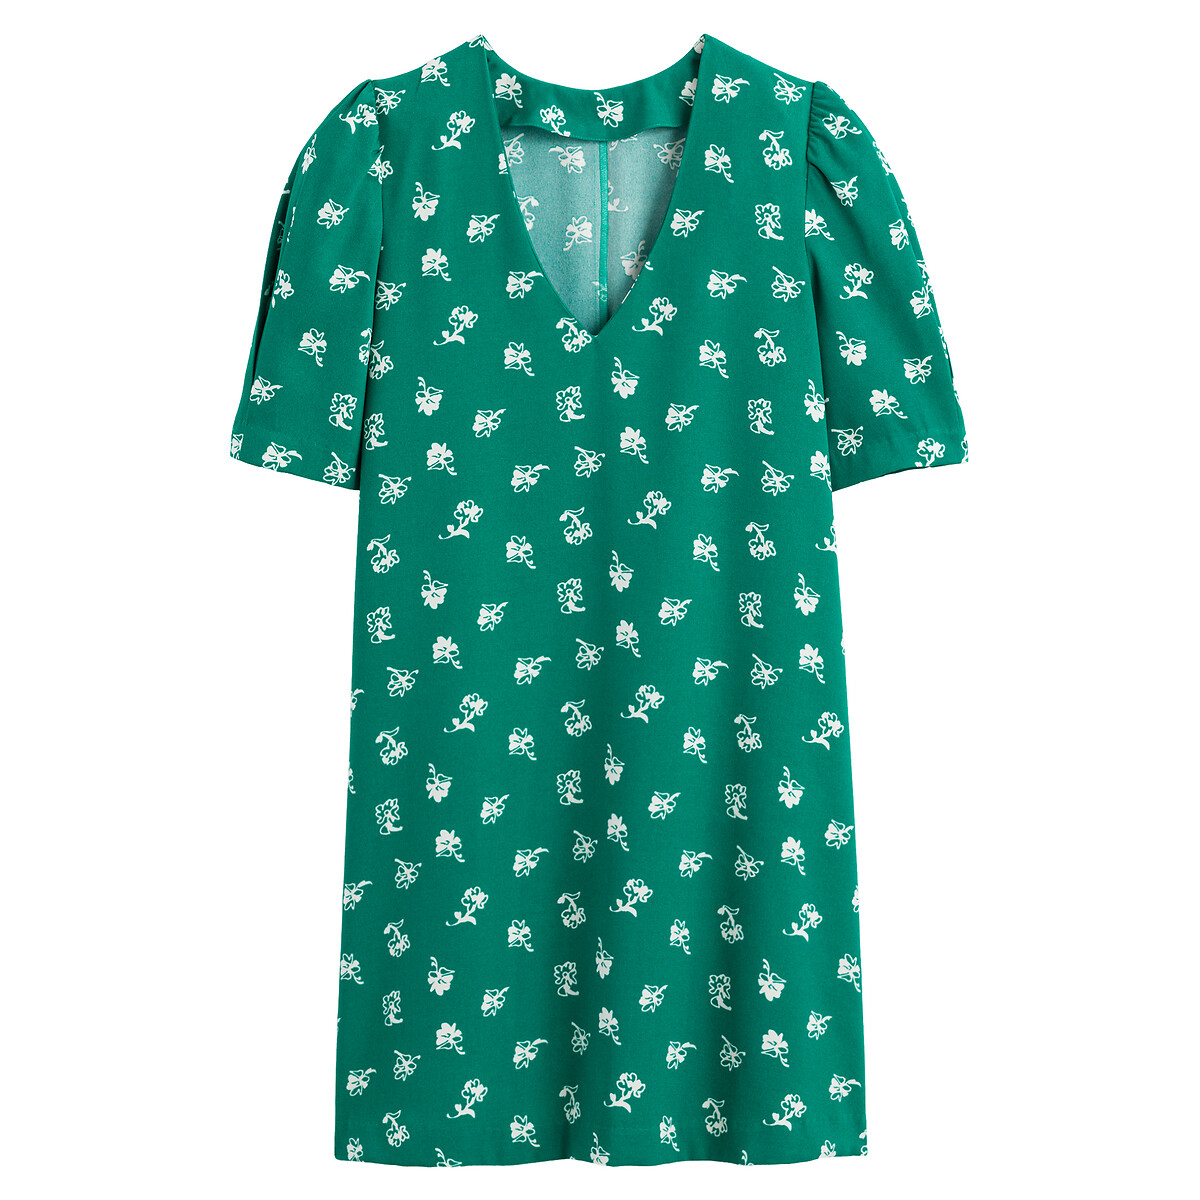 Платье Расклешенное с V-образным вырезом короткими рукавами и принтом 58 зеленый LaRedoute, размер 58 - фото 5